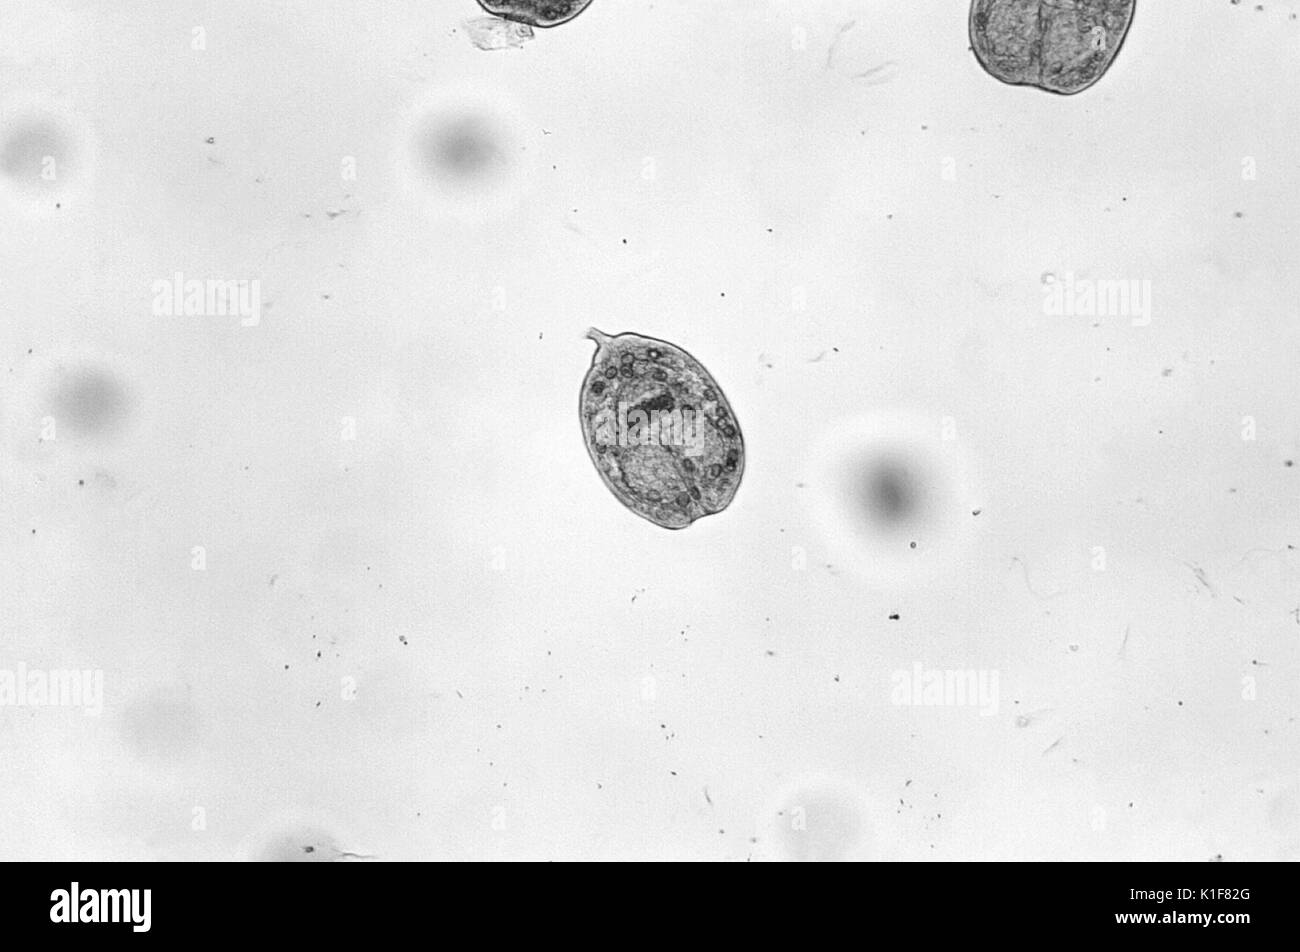 Unter einer niedrigen Vergrößerung von nur 100 X, das photomicrograph ergab drei Echinococcus sp. protoscolices, die von einem hydatid Zyste befreit worden war. Während ihres gesamten Lebenszyklus im Wirt, diese bandwürmer durch ein Ei, Bühne, gefolgt von einem oncosphere-Phase, die durch die Bildung einer zystischen Stadium gefolgt ist, in einem hydatid Zyste führt. Brechen dieser Zysten gibt diese Larven protoscolices und eine Bedingung, die als? hydatid Sand bekannt? (Siehe PHIL 1450). Hunde und andere caniden sind die endgültigen Wirte für Echinococcus spp. Menschen sind, werden nur von den Larven nach Verschlucken o infiziert Stockfoto